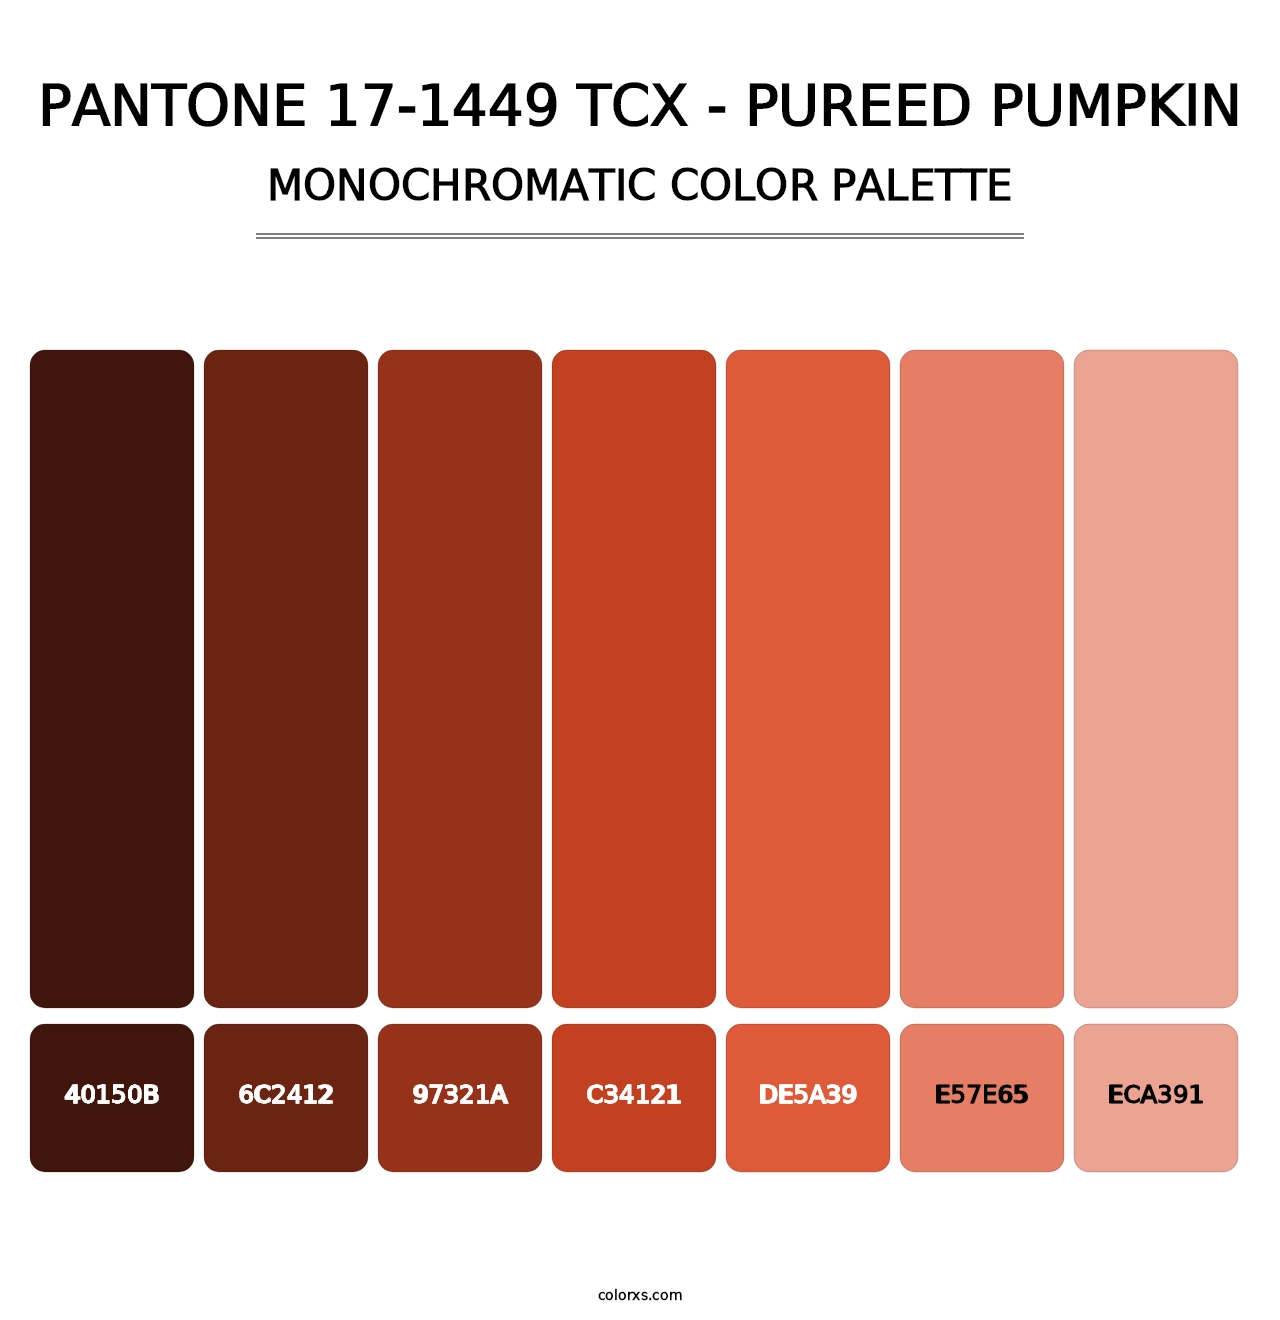 PANTONE 17-1449 TCX - Pureed Pumpkin - Monochromatic Color Palette